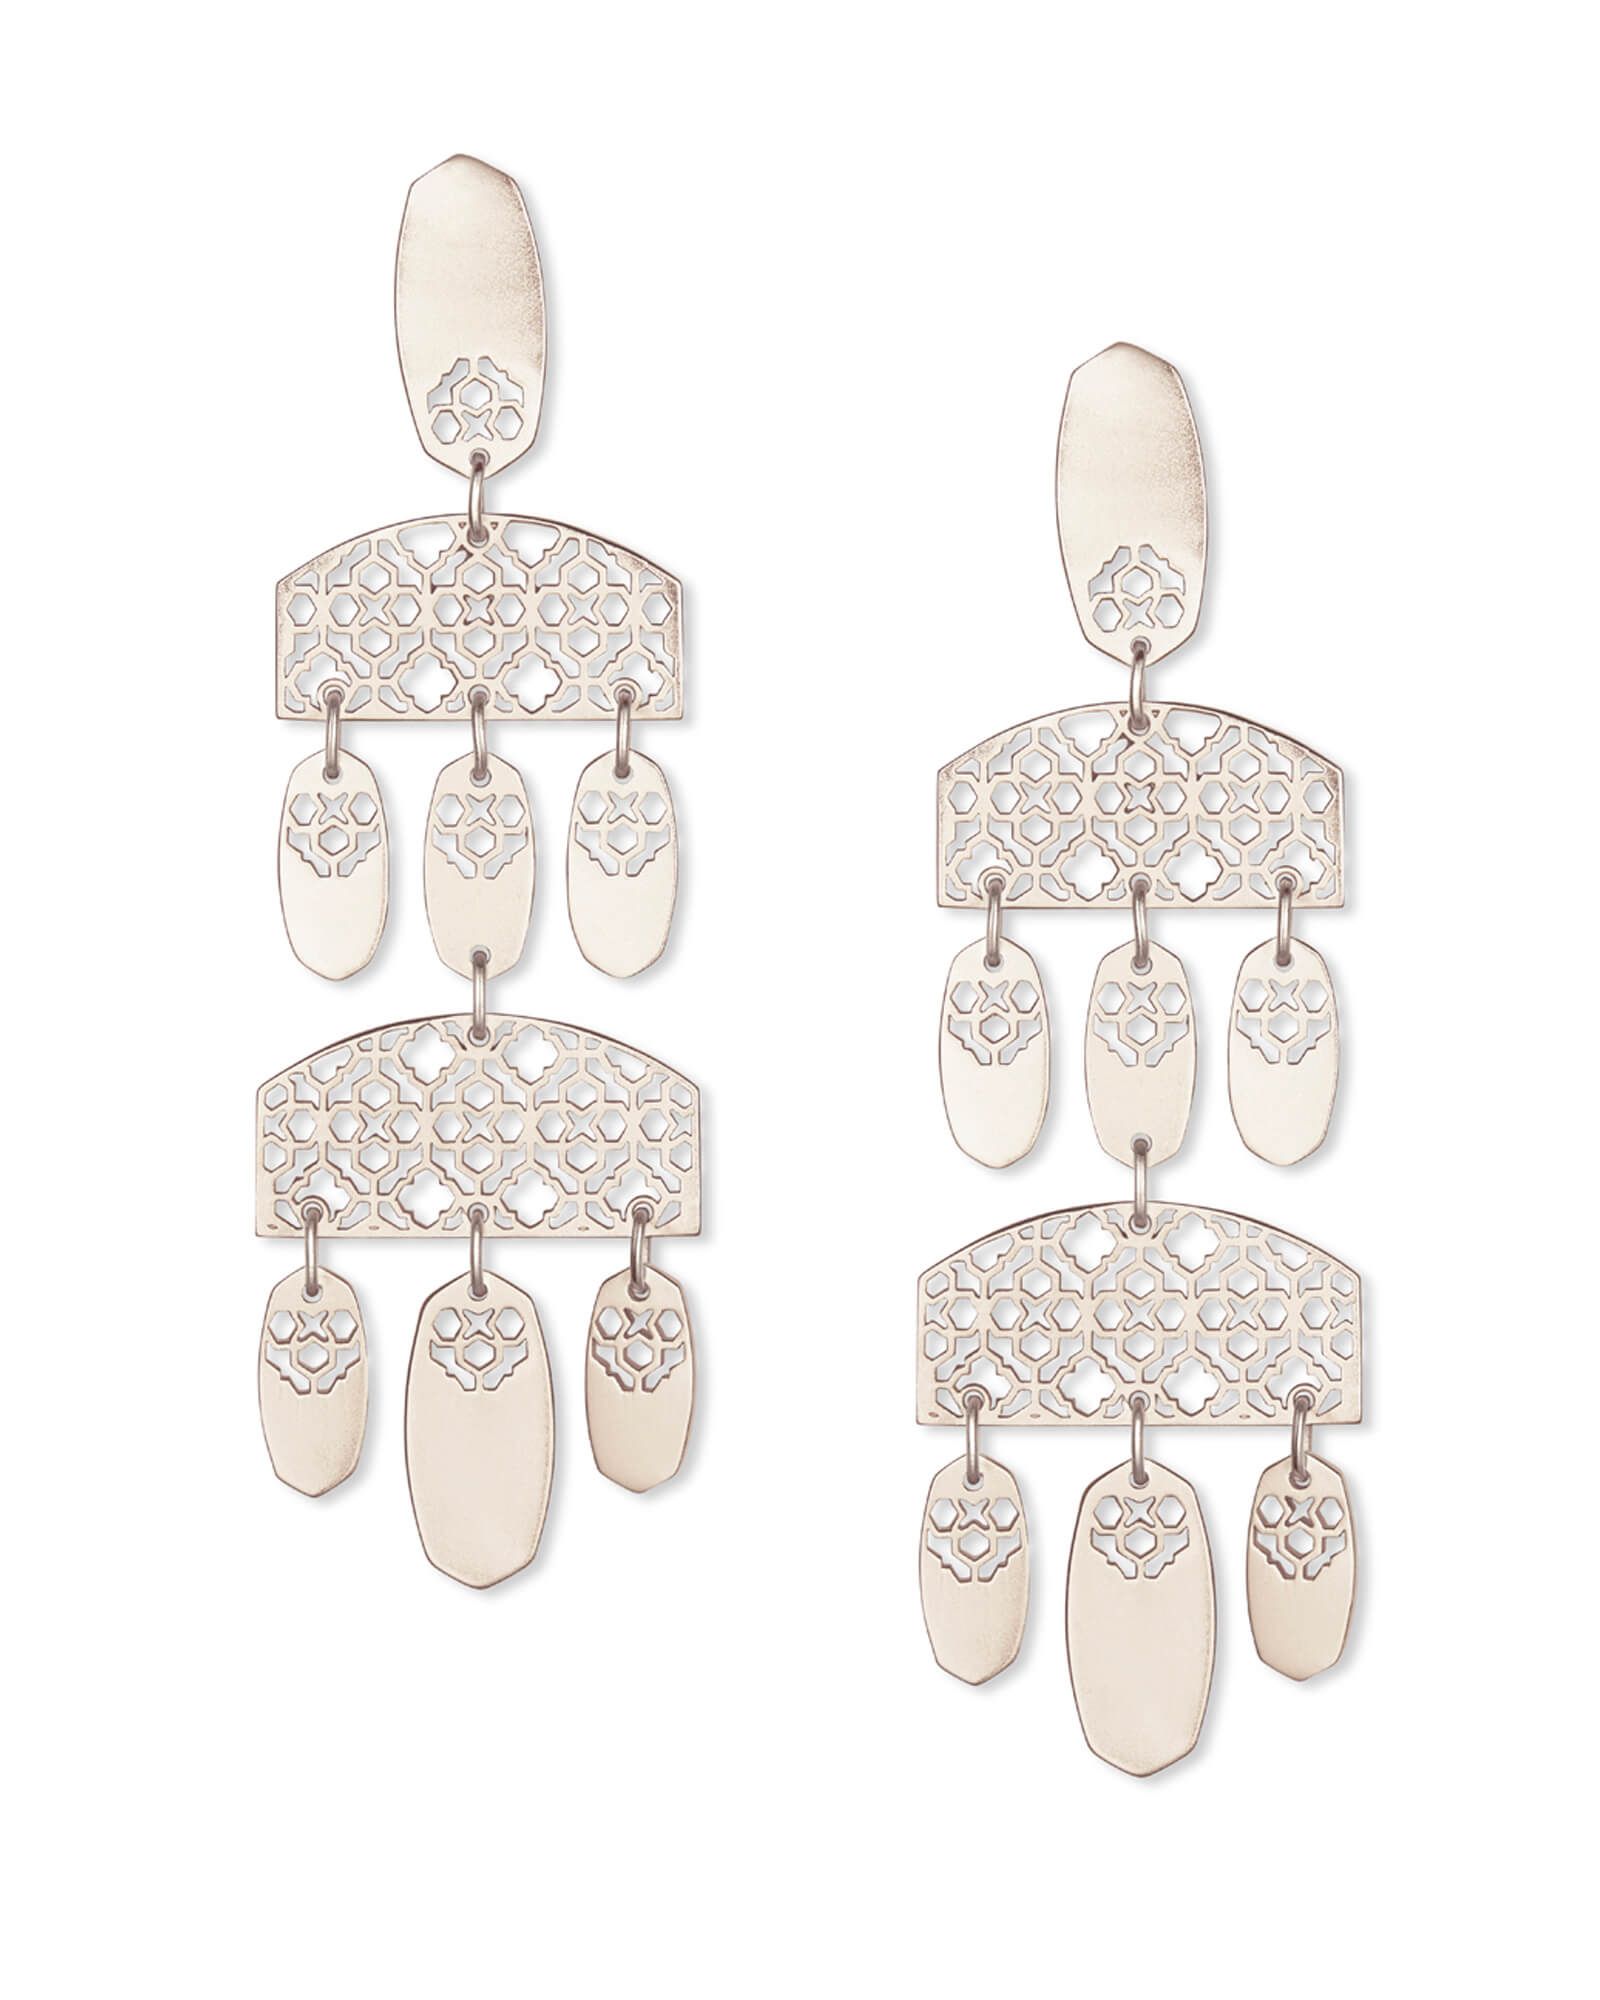 Emmett Silver Statement Earrings in Silver Filigree | Kendra Scott | Kendra Scott